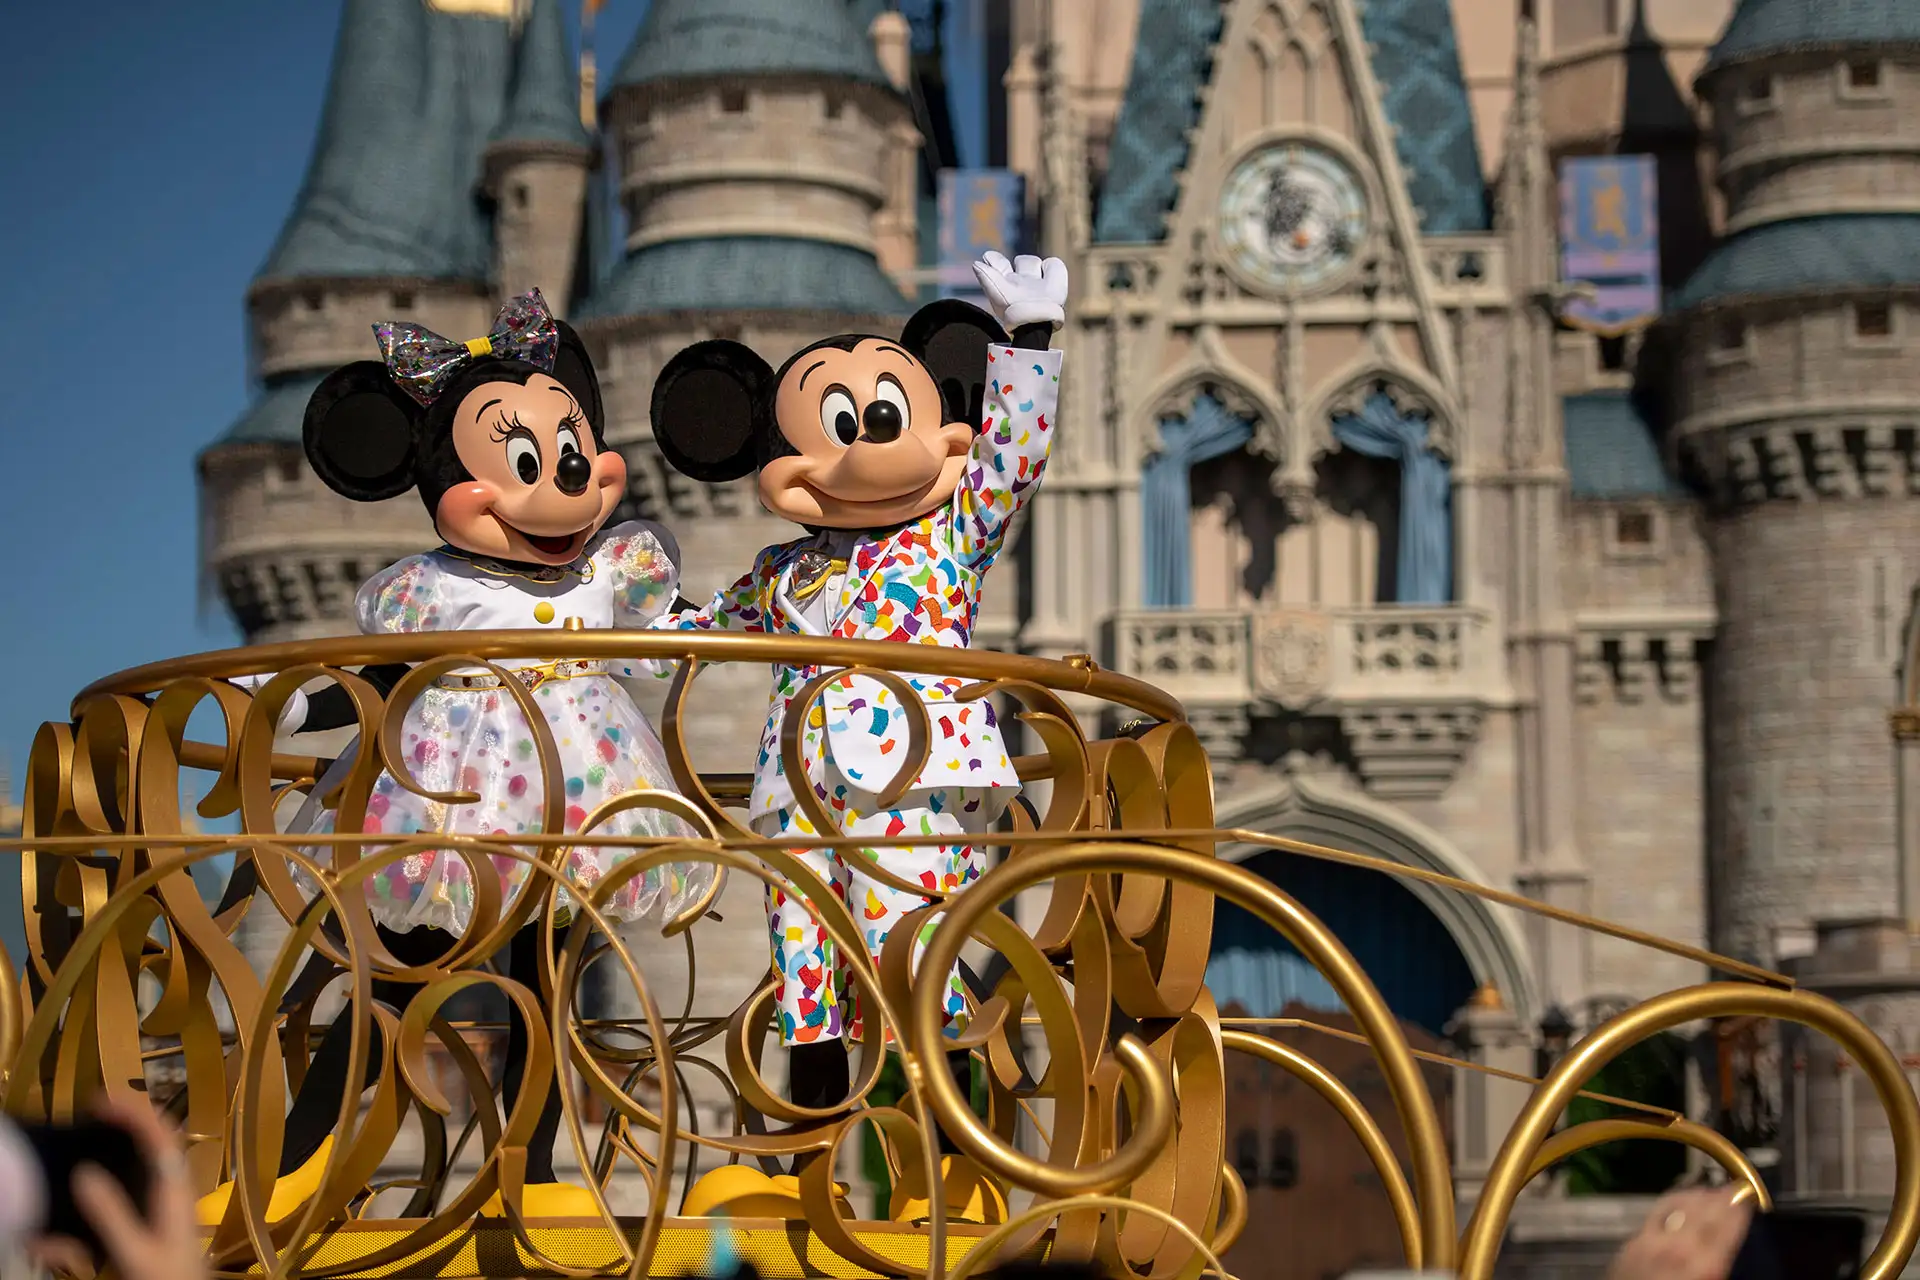 Mickey and Minnie at Disney's Magic Kingdom; Courtesy of Disney